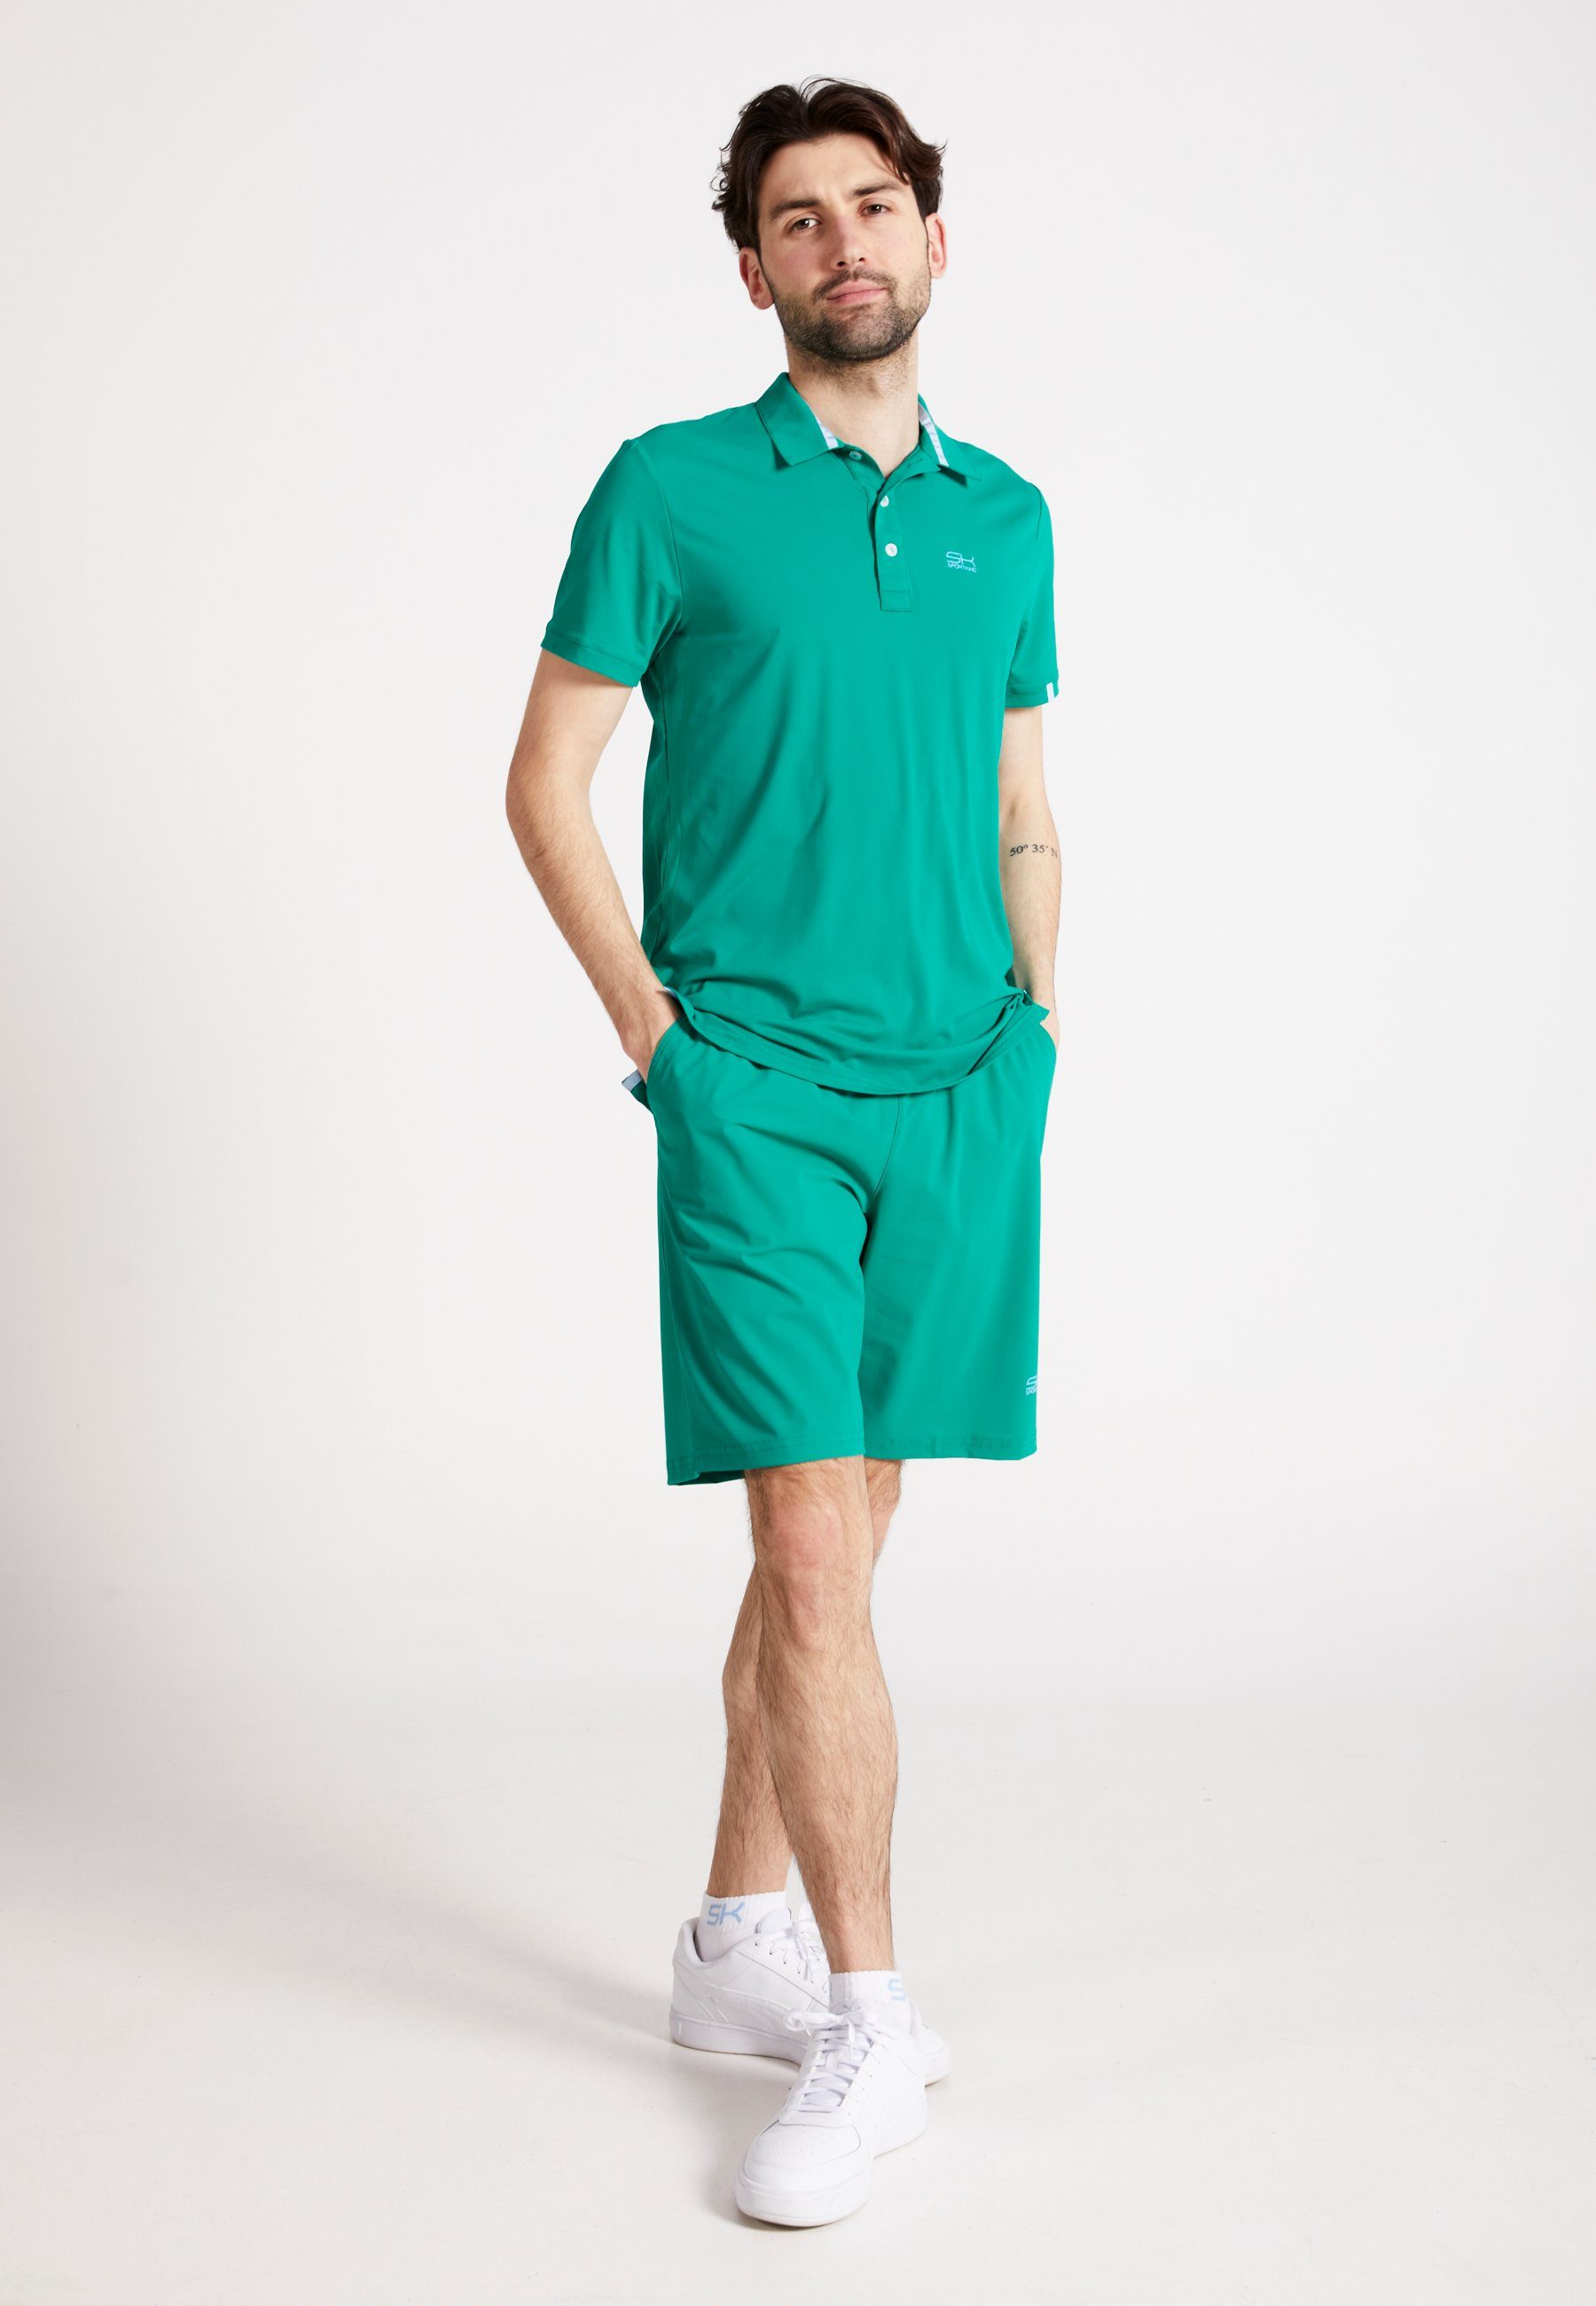 SPORTKIND Funktionsshirt Golf Polo Jungen Herren grün Shirt smaragd & Kurzarm